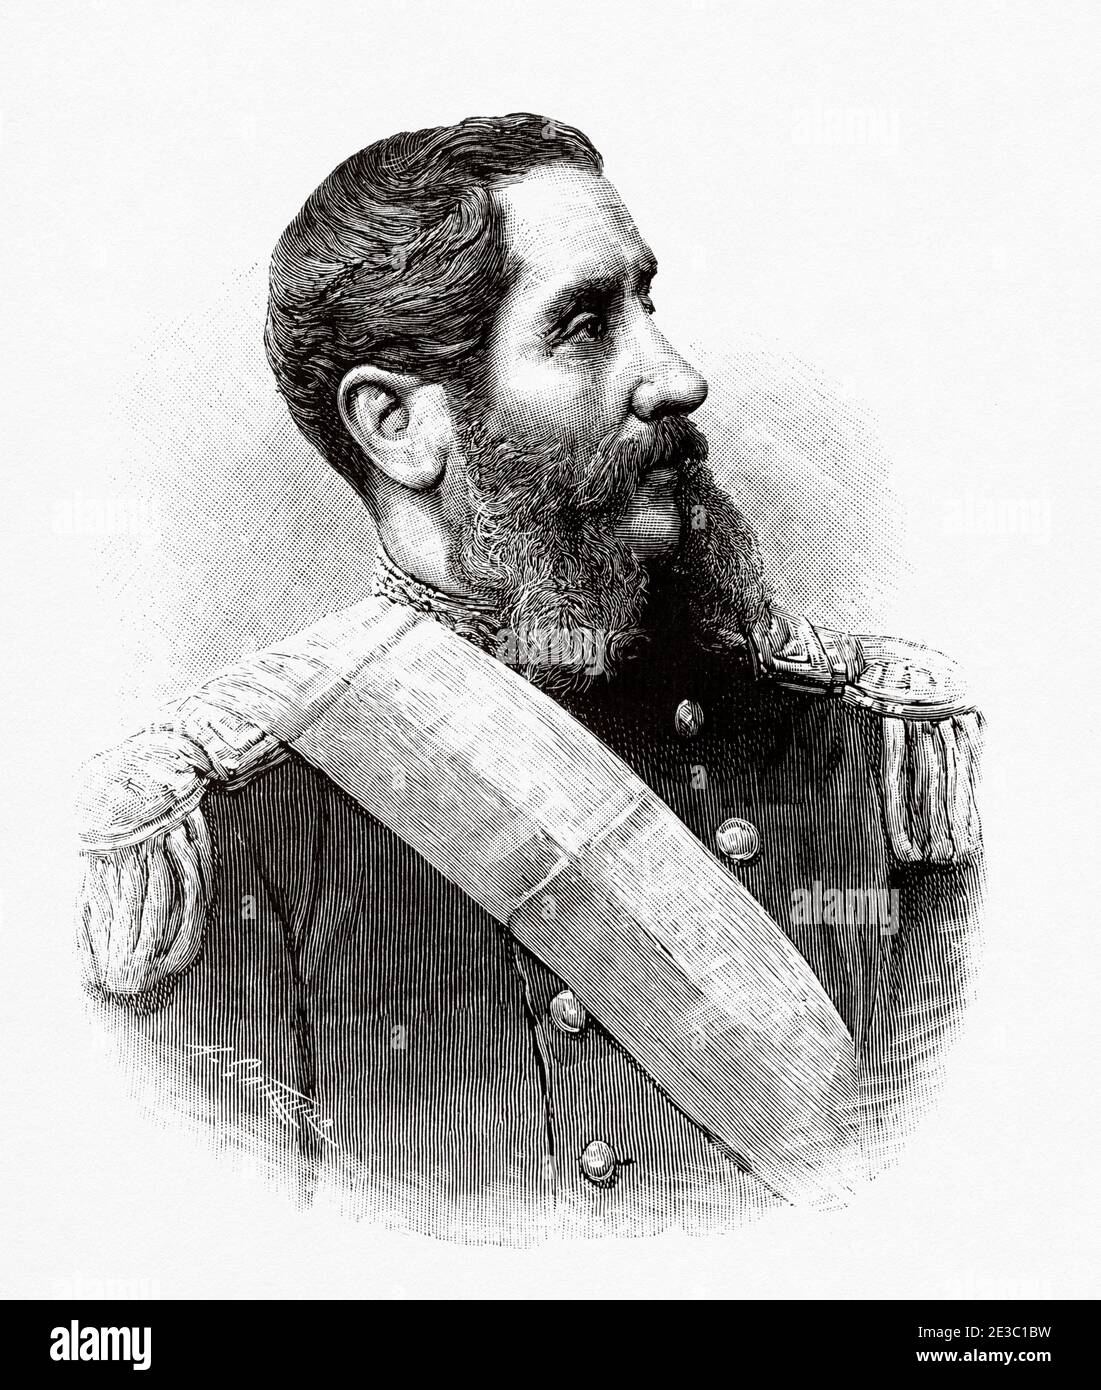 Portrait d'Andres Avelino Caceres Dorregaray (Ayacucho 1833 - Lima 1923), était un militaire péruvien et un homme politique qui a combattu dans la guerre du Pacifique et a été Président constitutionnel du Pérou. Il est le patron de l'arme d'infanterie de l'armée péruvienne. De la Ilustracion Española y Americana 1895 Banque D'Images